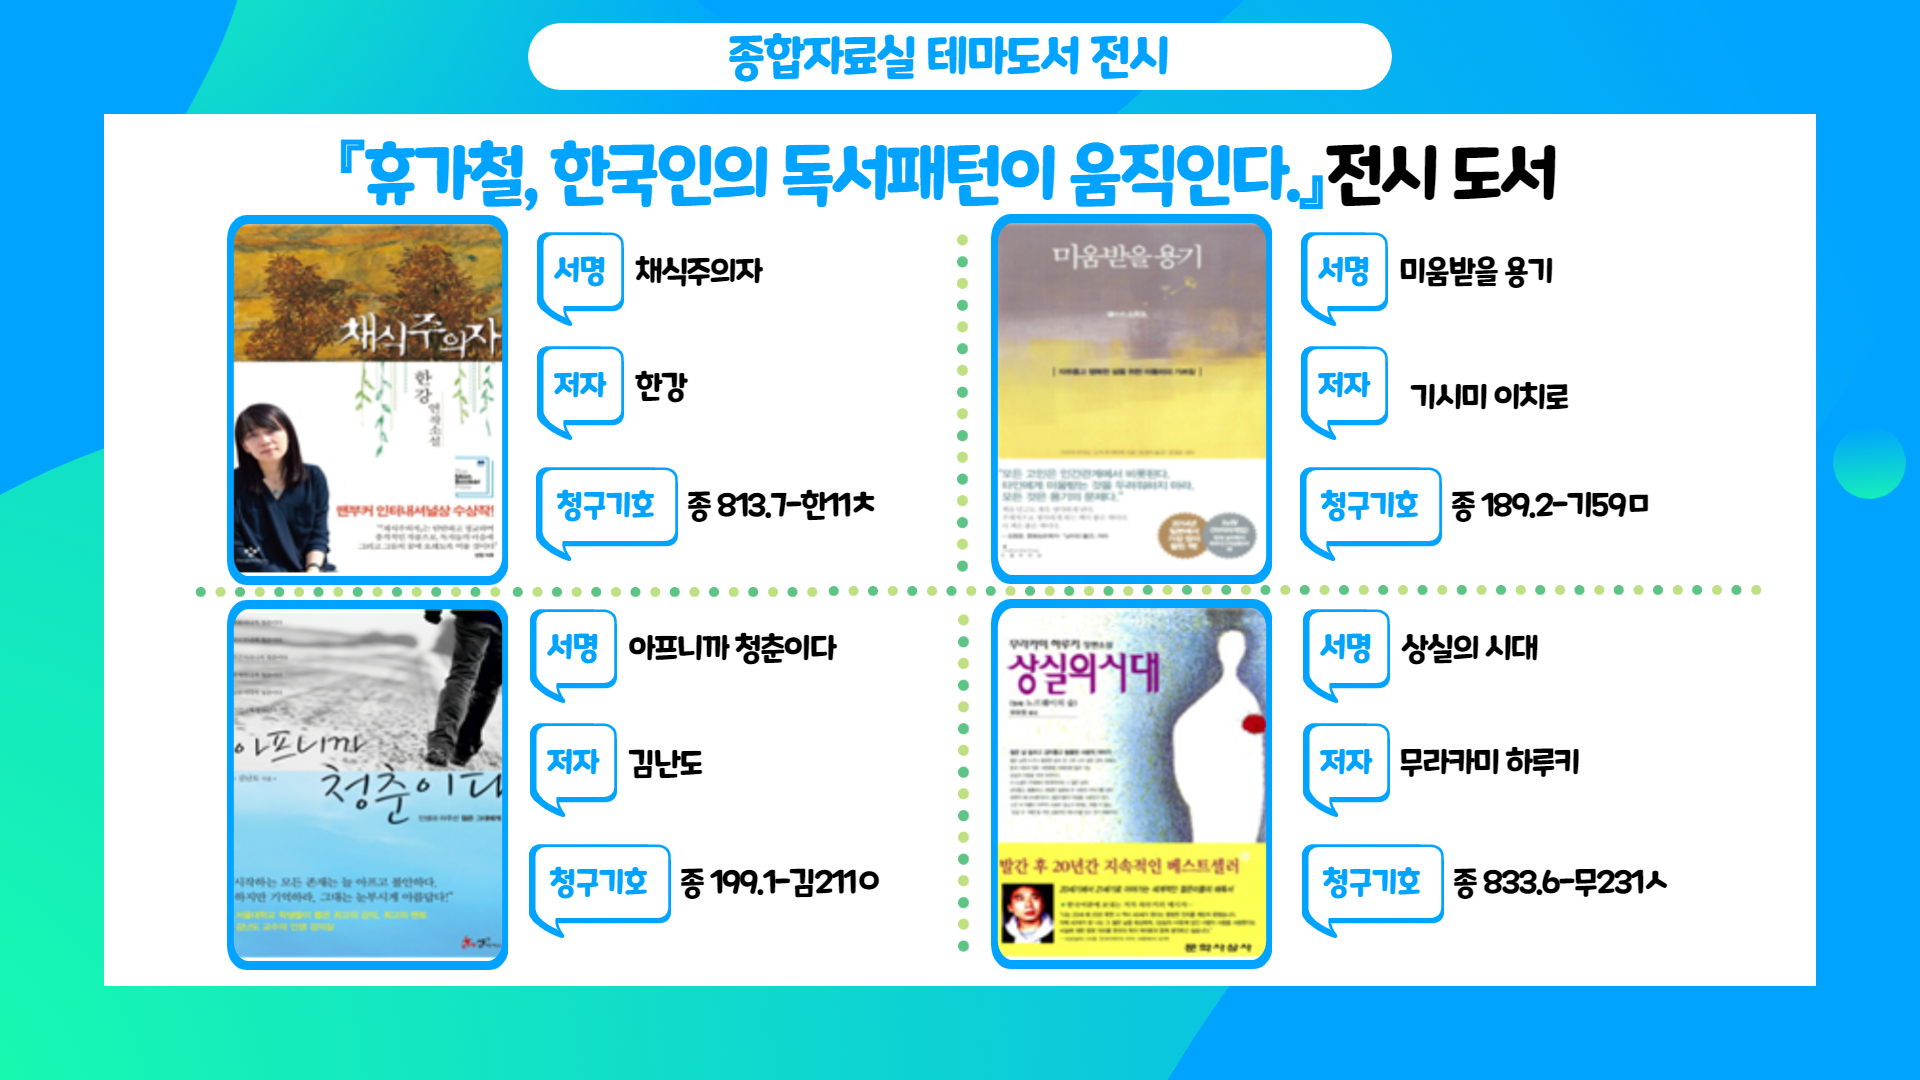 종합자료실 7월 테마도서 「휴가철, 한국인의 독서패턴이 움직인다」 전시 - 3번째 이미지